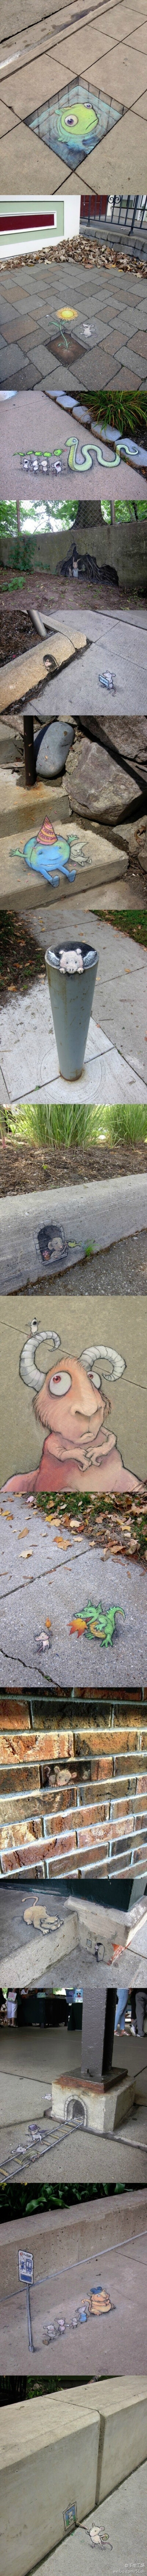 艺术家David Zinn的街头画，萌态可掬又聪明伶俐的小老鼠们！